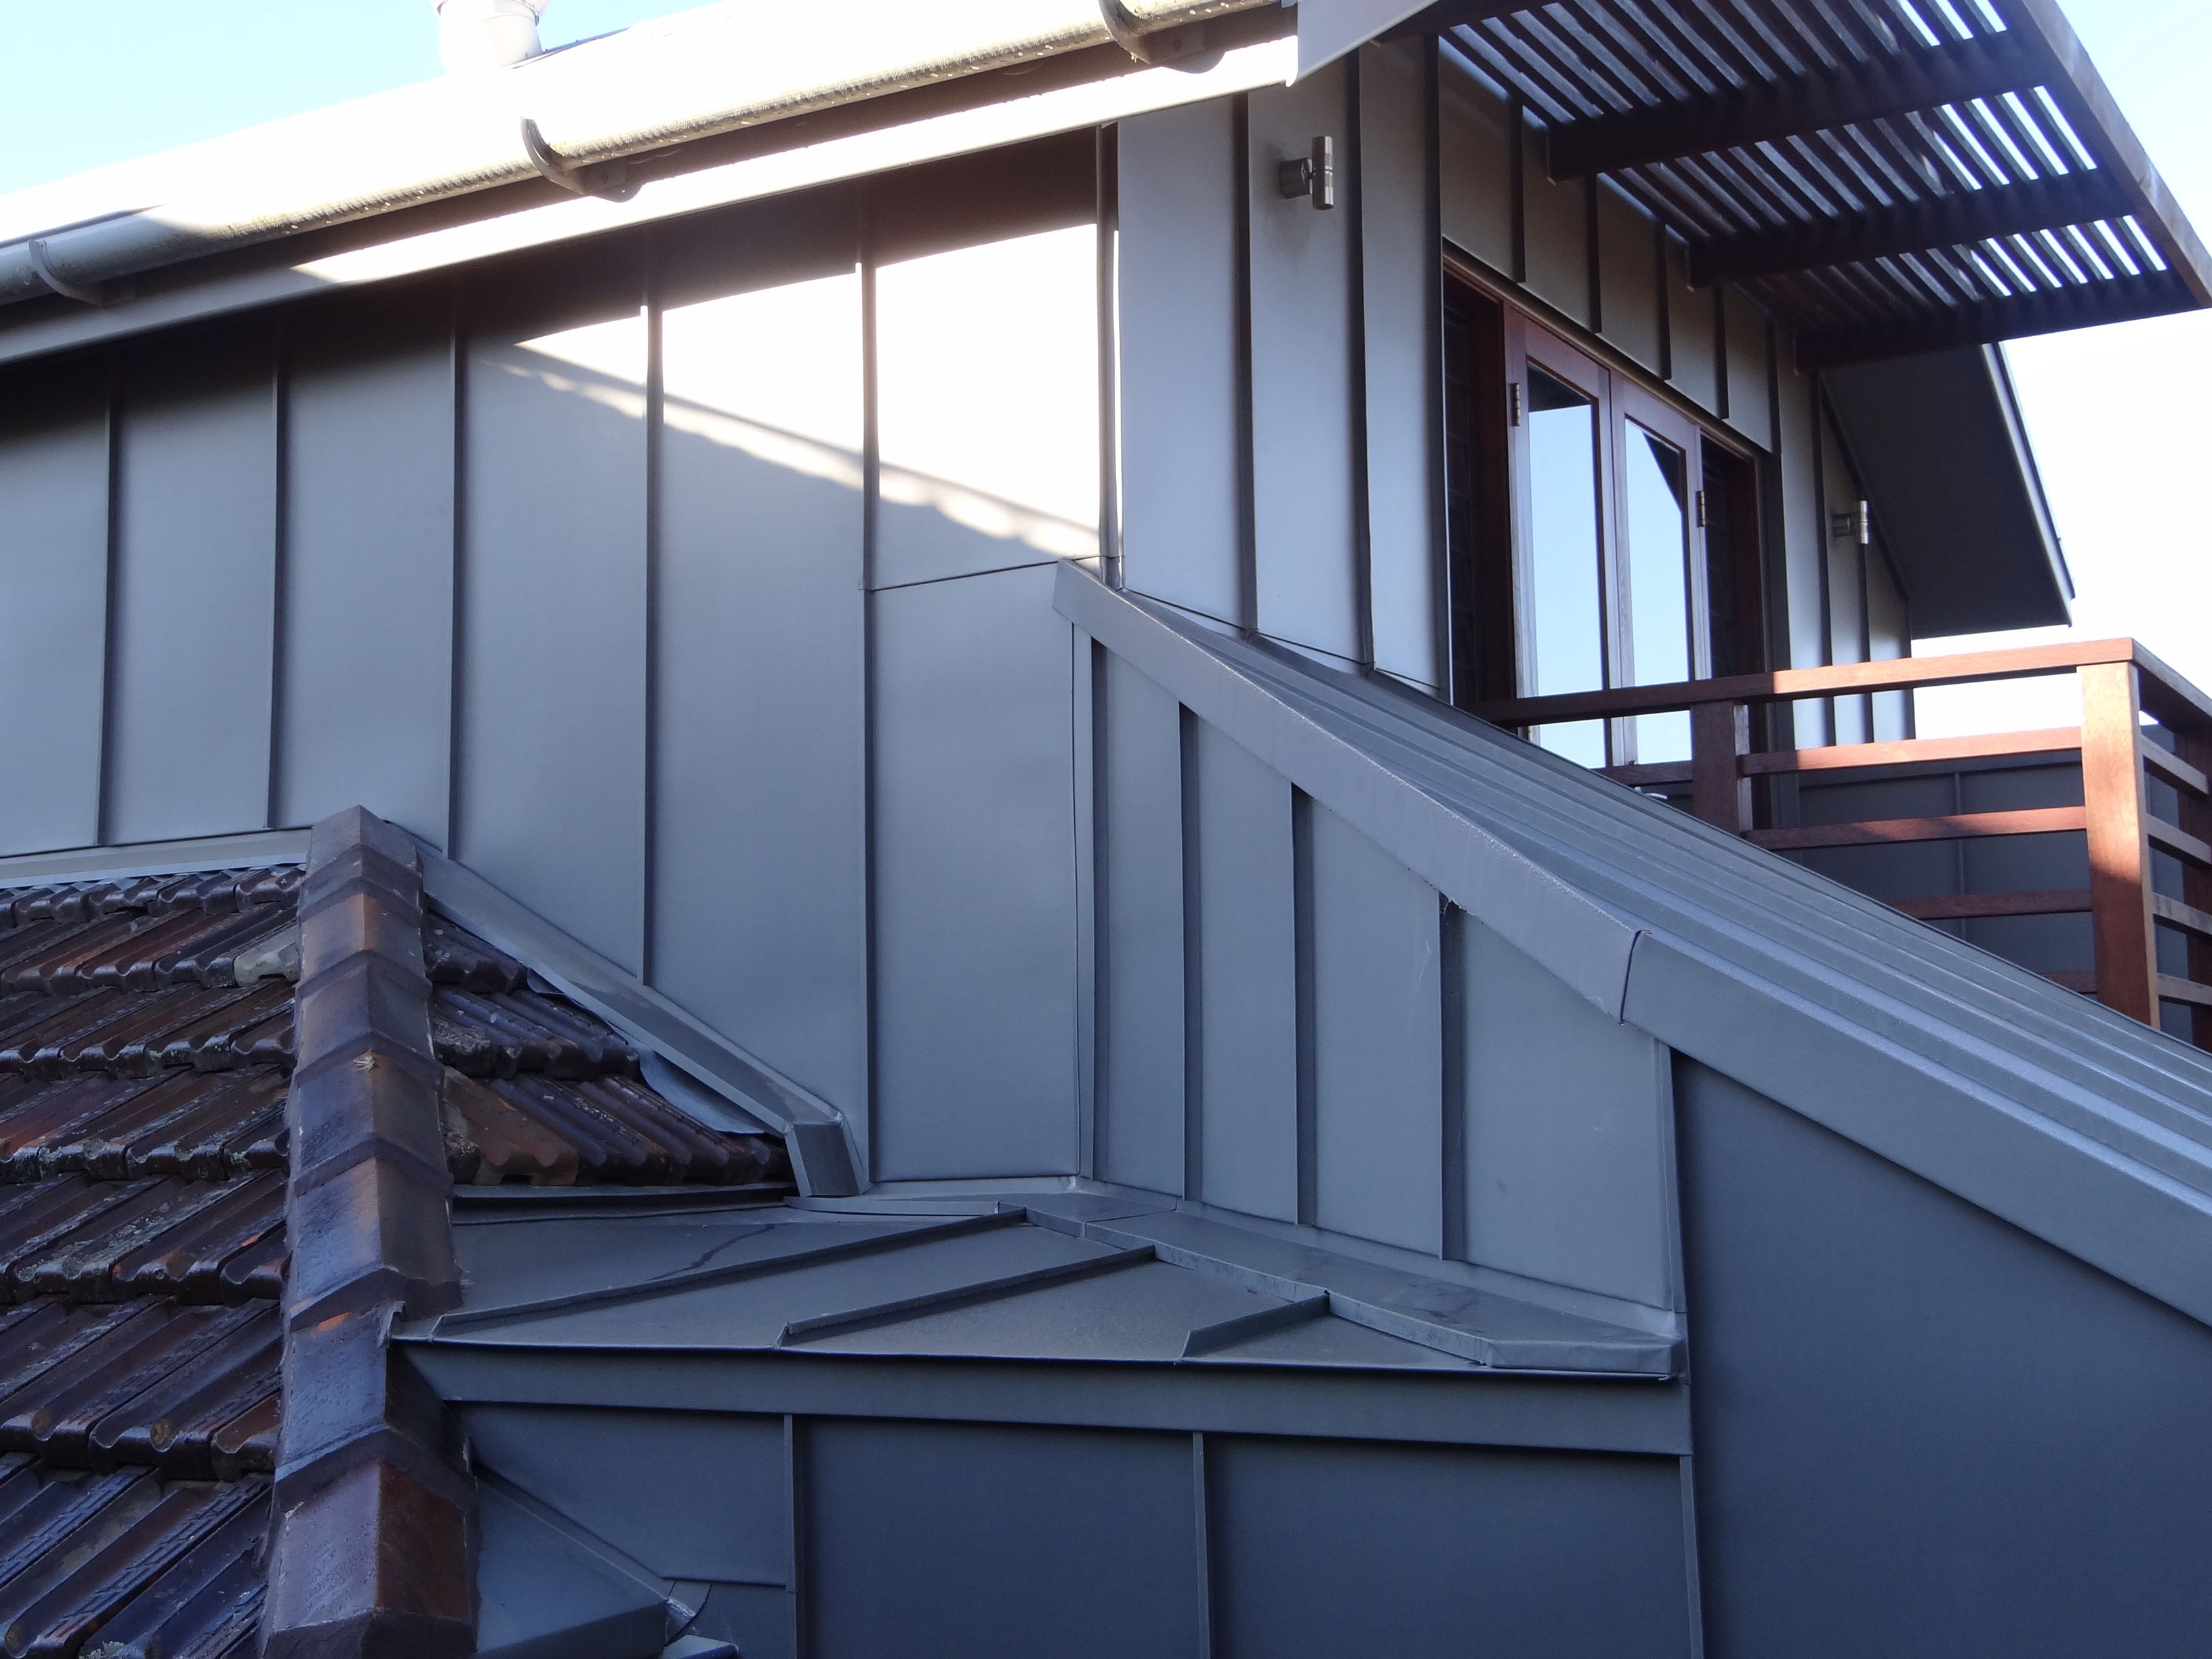 Zinc / Aluminium Roofing Sydney